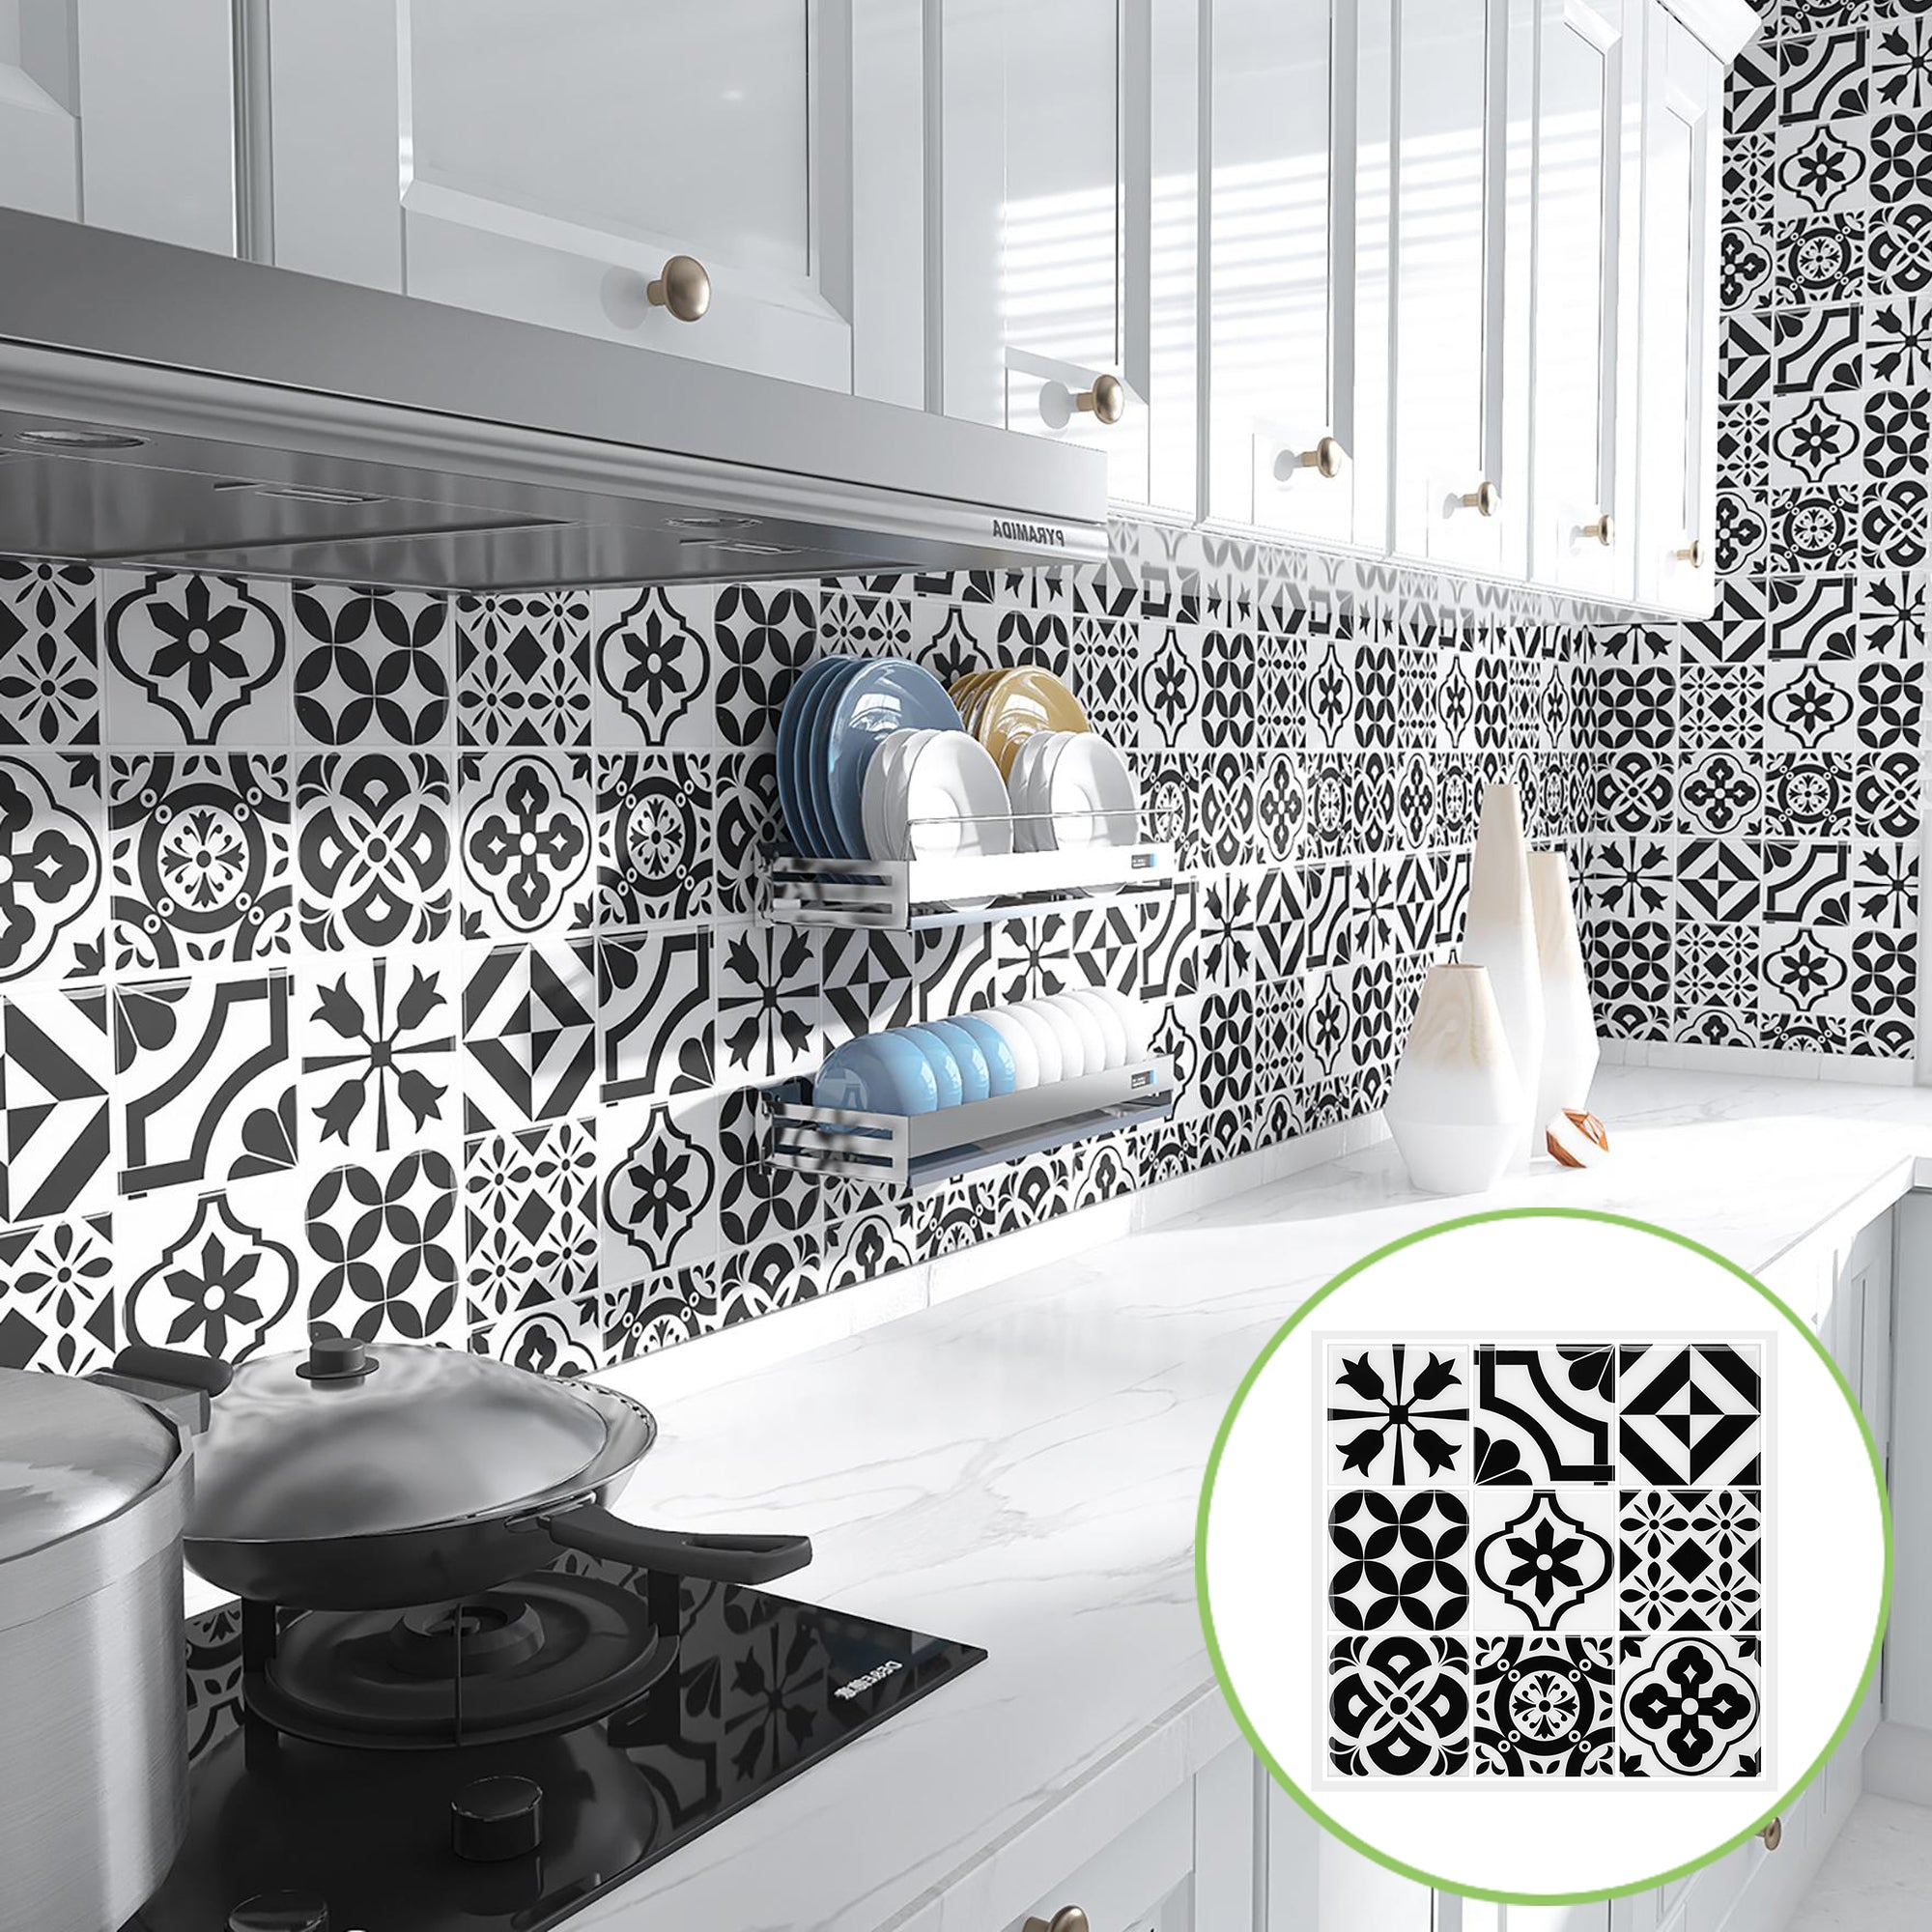 Baroque 12 x 12 Peel and Stick Tile Backsplash for Kitchen – LSDECO-TILE